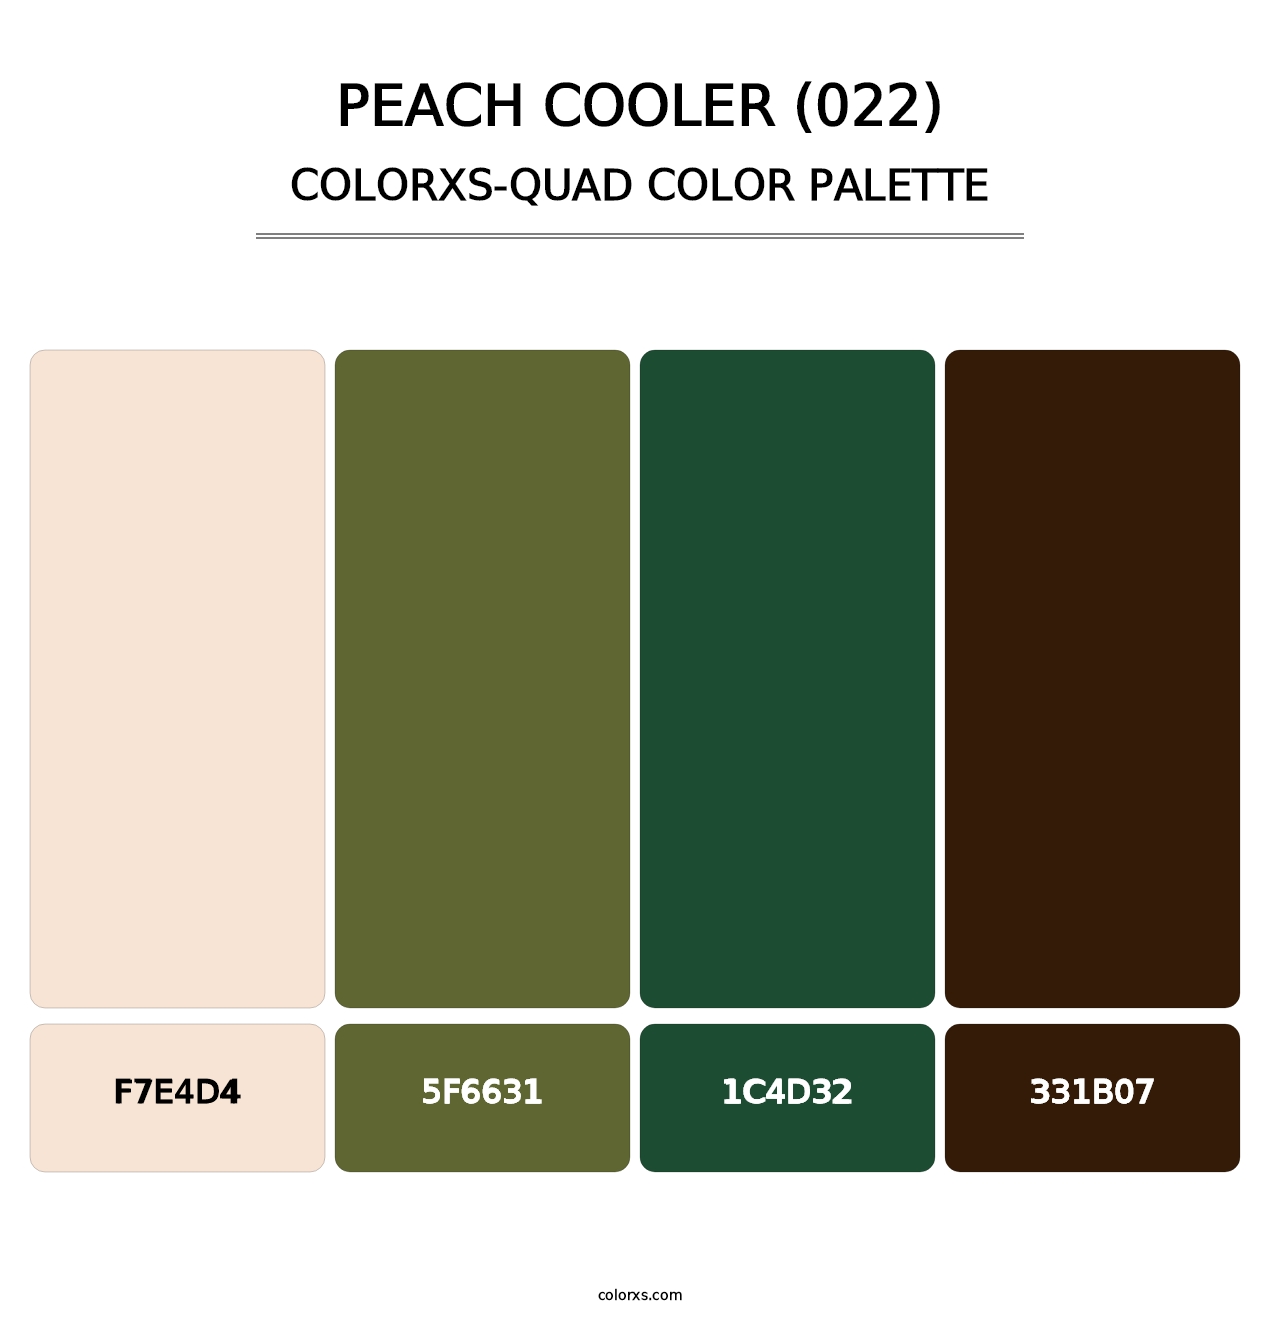 Peach Cooler (022) - Colorxs Quad Palette